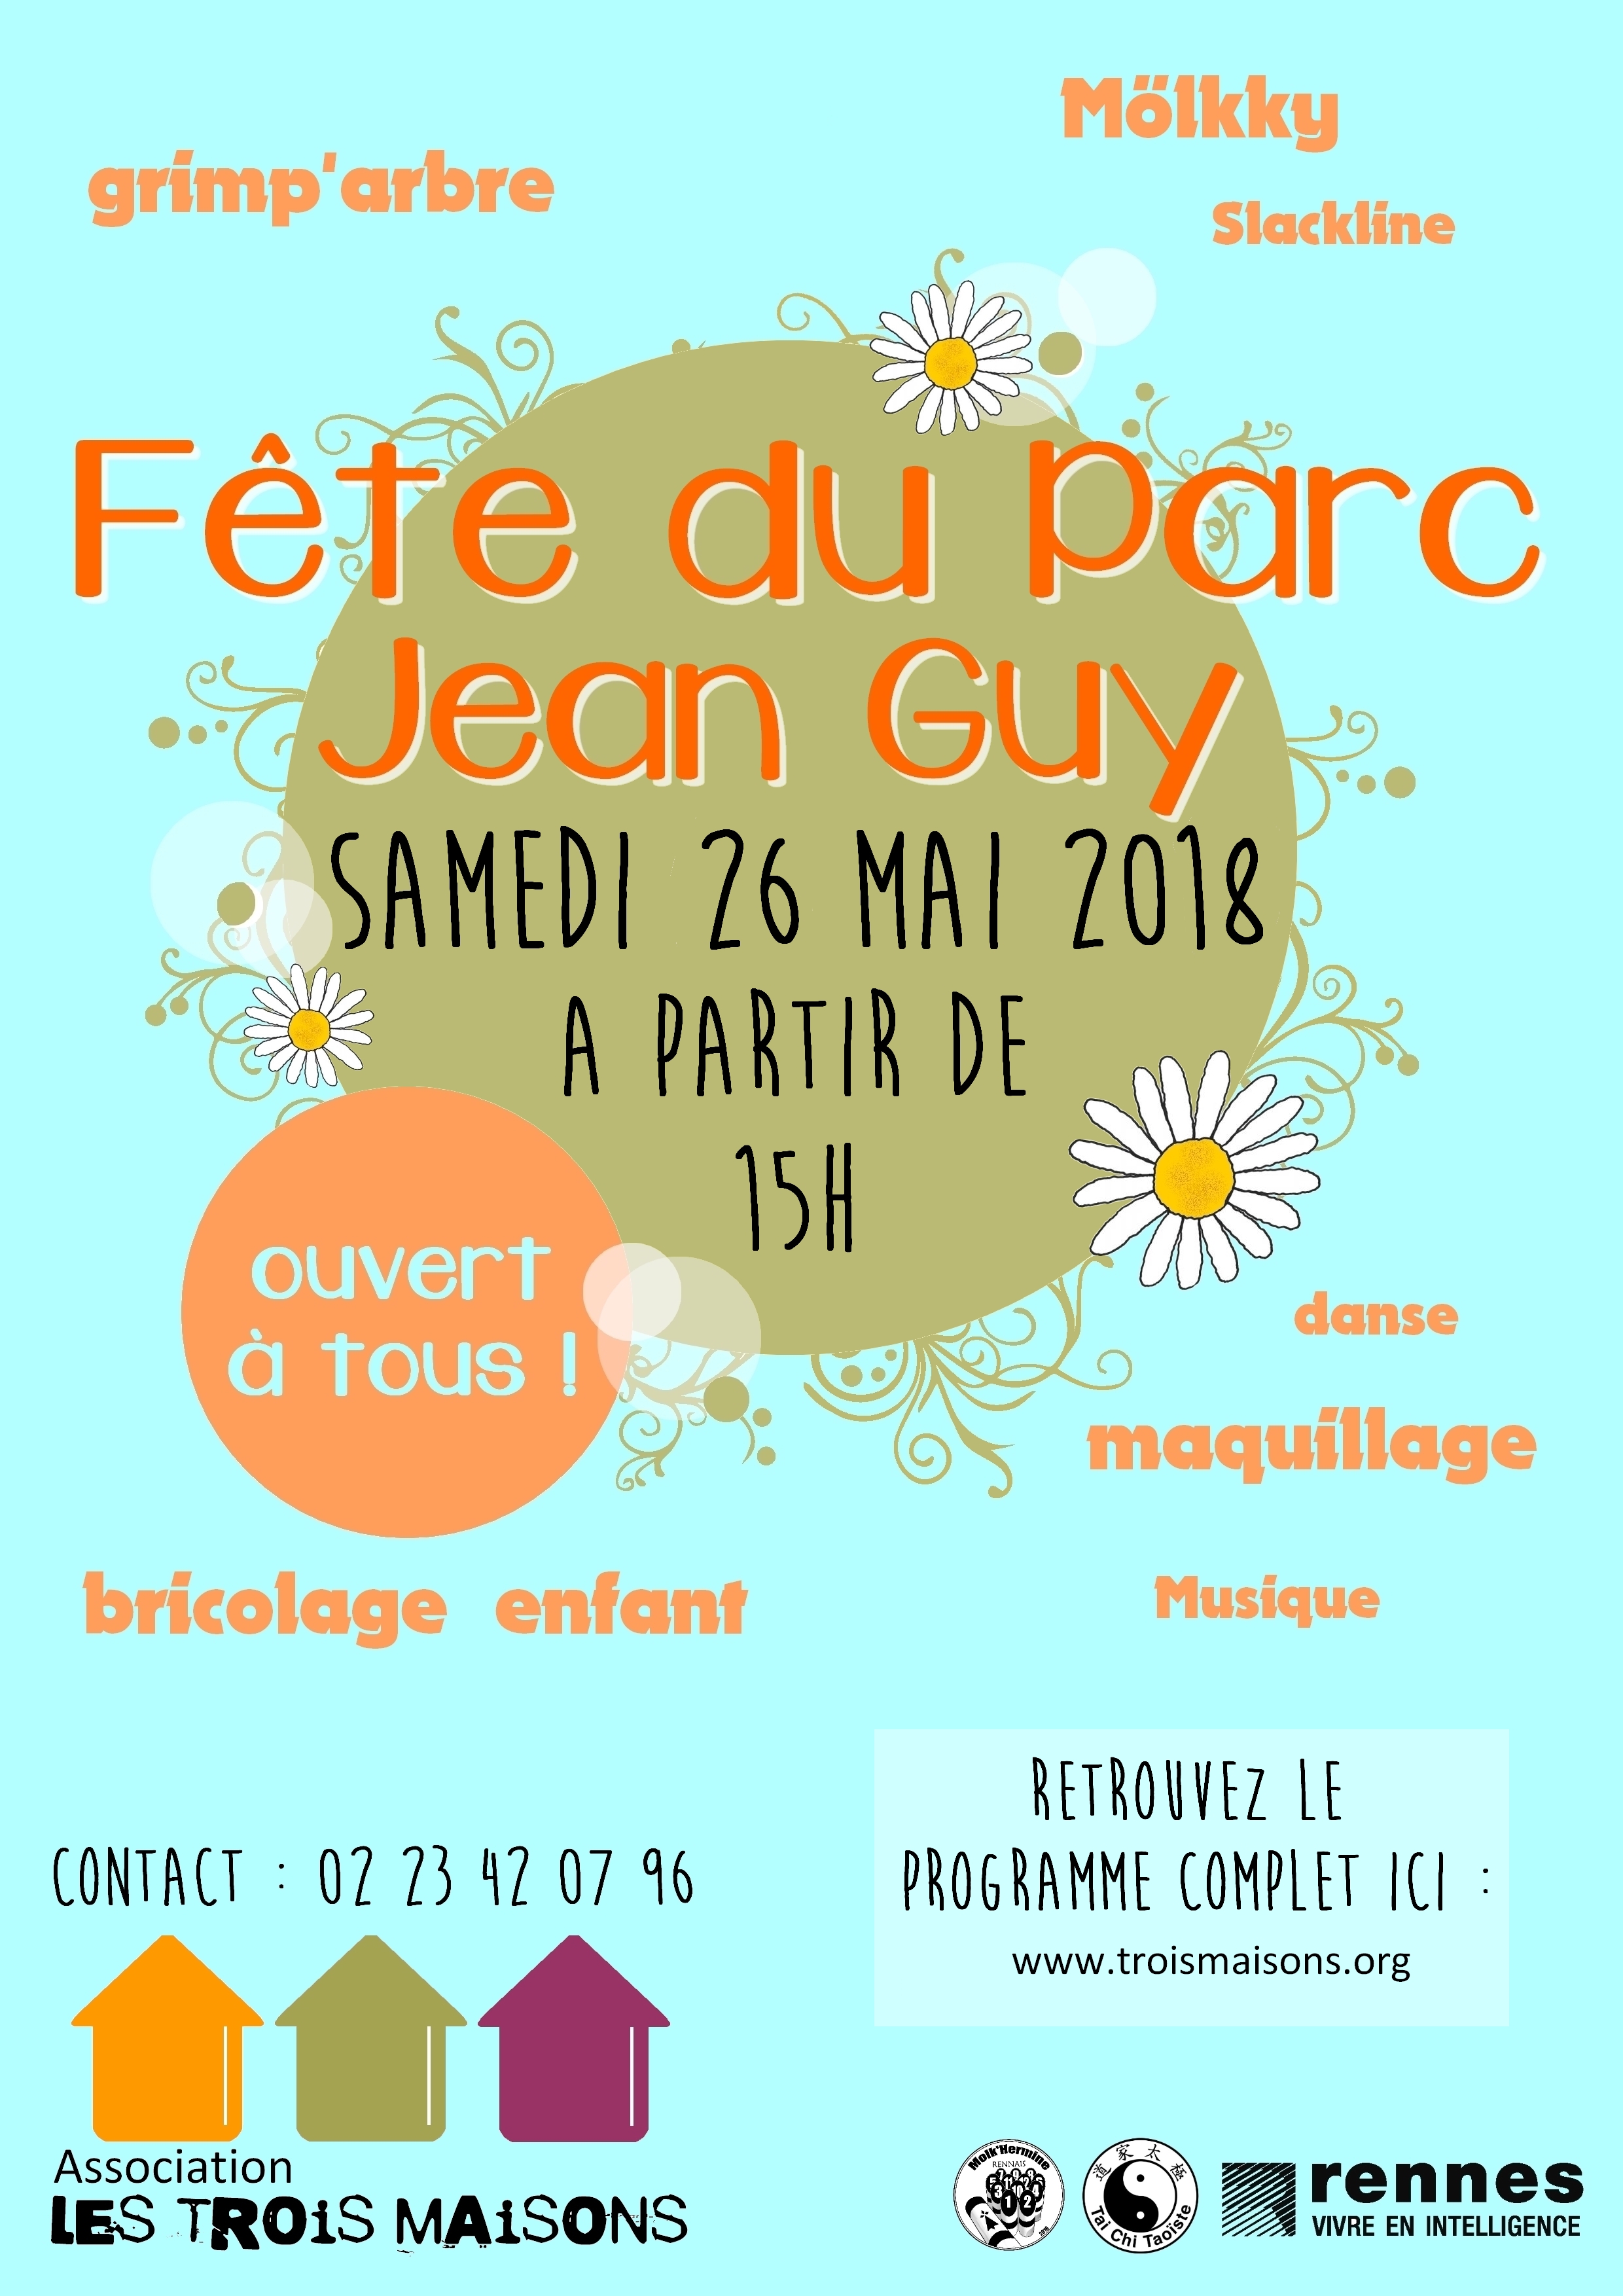 Fête du parc Jean Guy par l'association Les Trois Maisons, samedi 26 mai 2018 : danses country, tai chi, danses bretonnes, grimp'arbre, slack line, bricolage, art floral, maquillage, möllky...